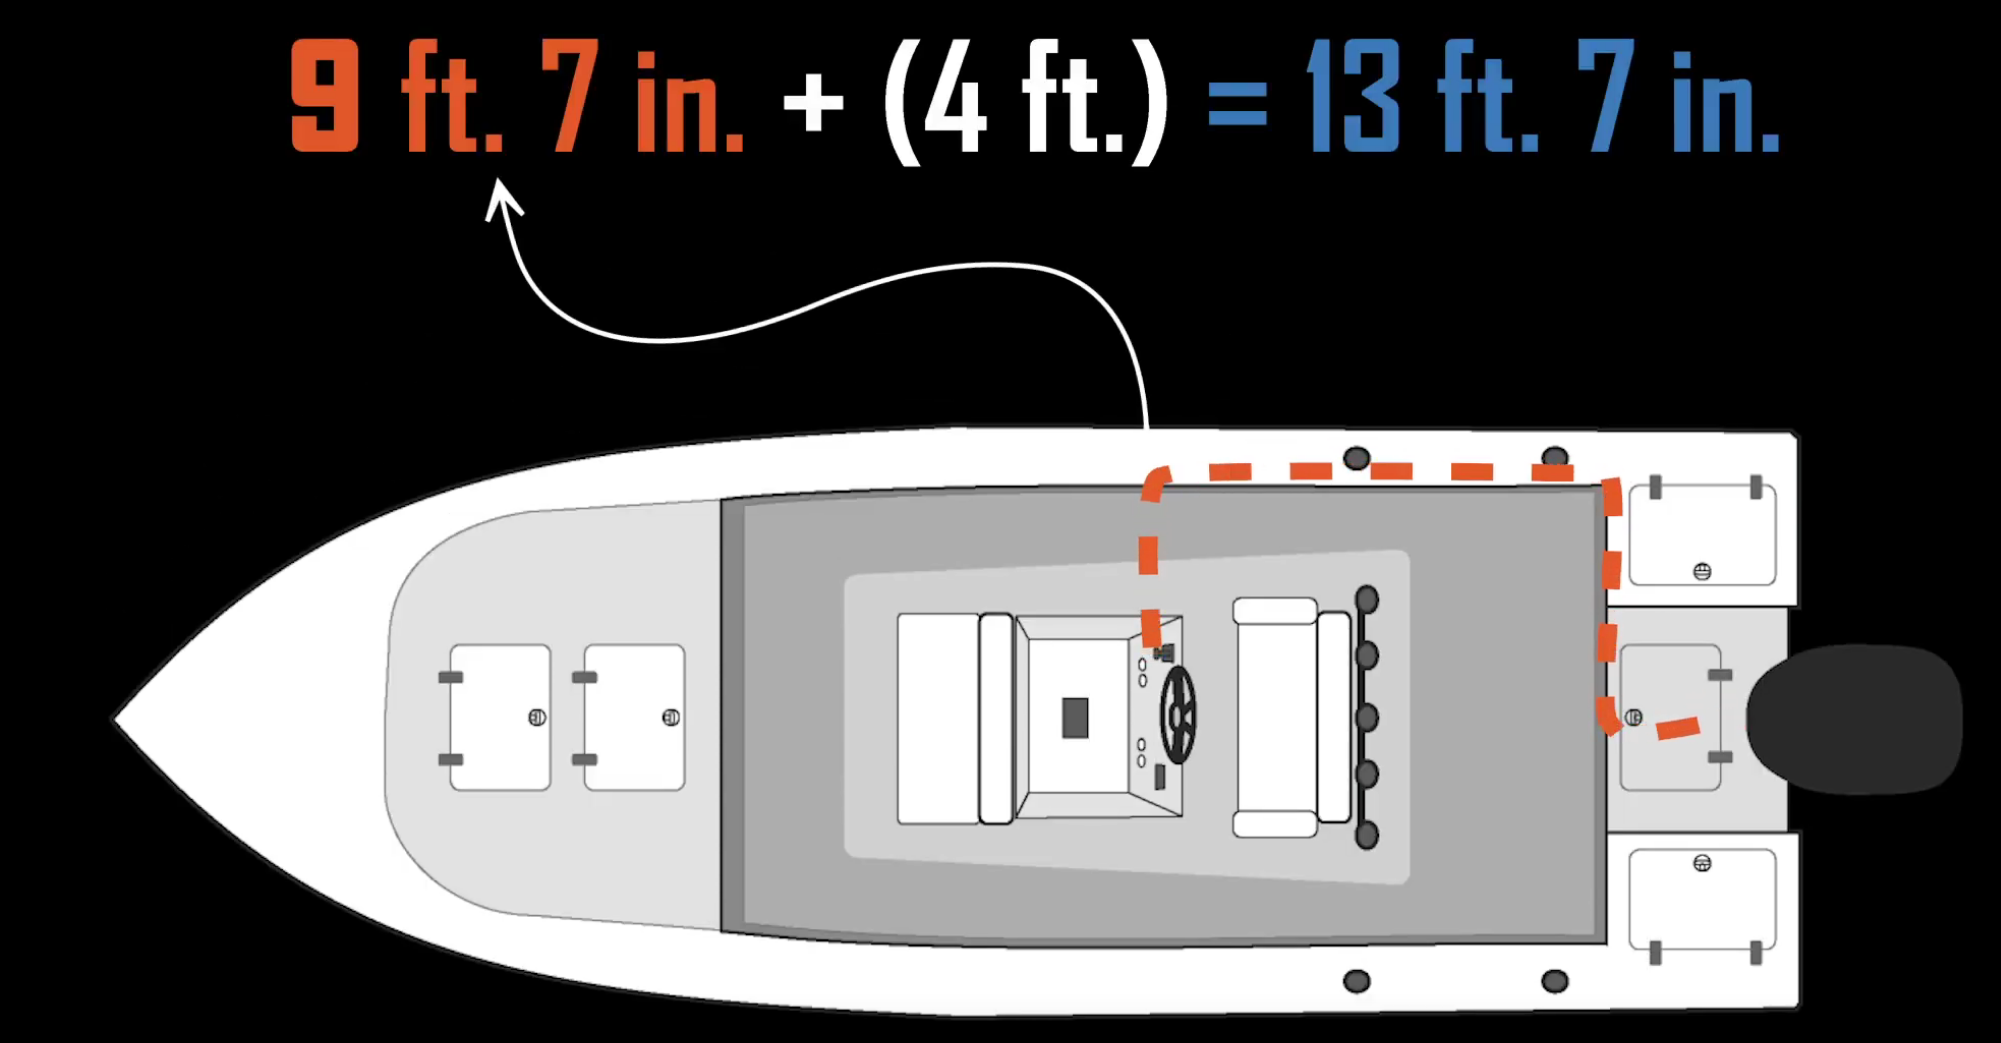 Boat rigging measurements diagram 